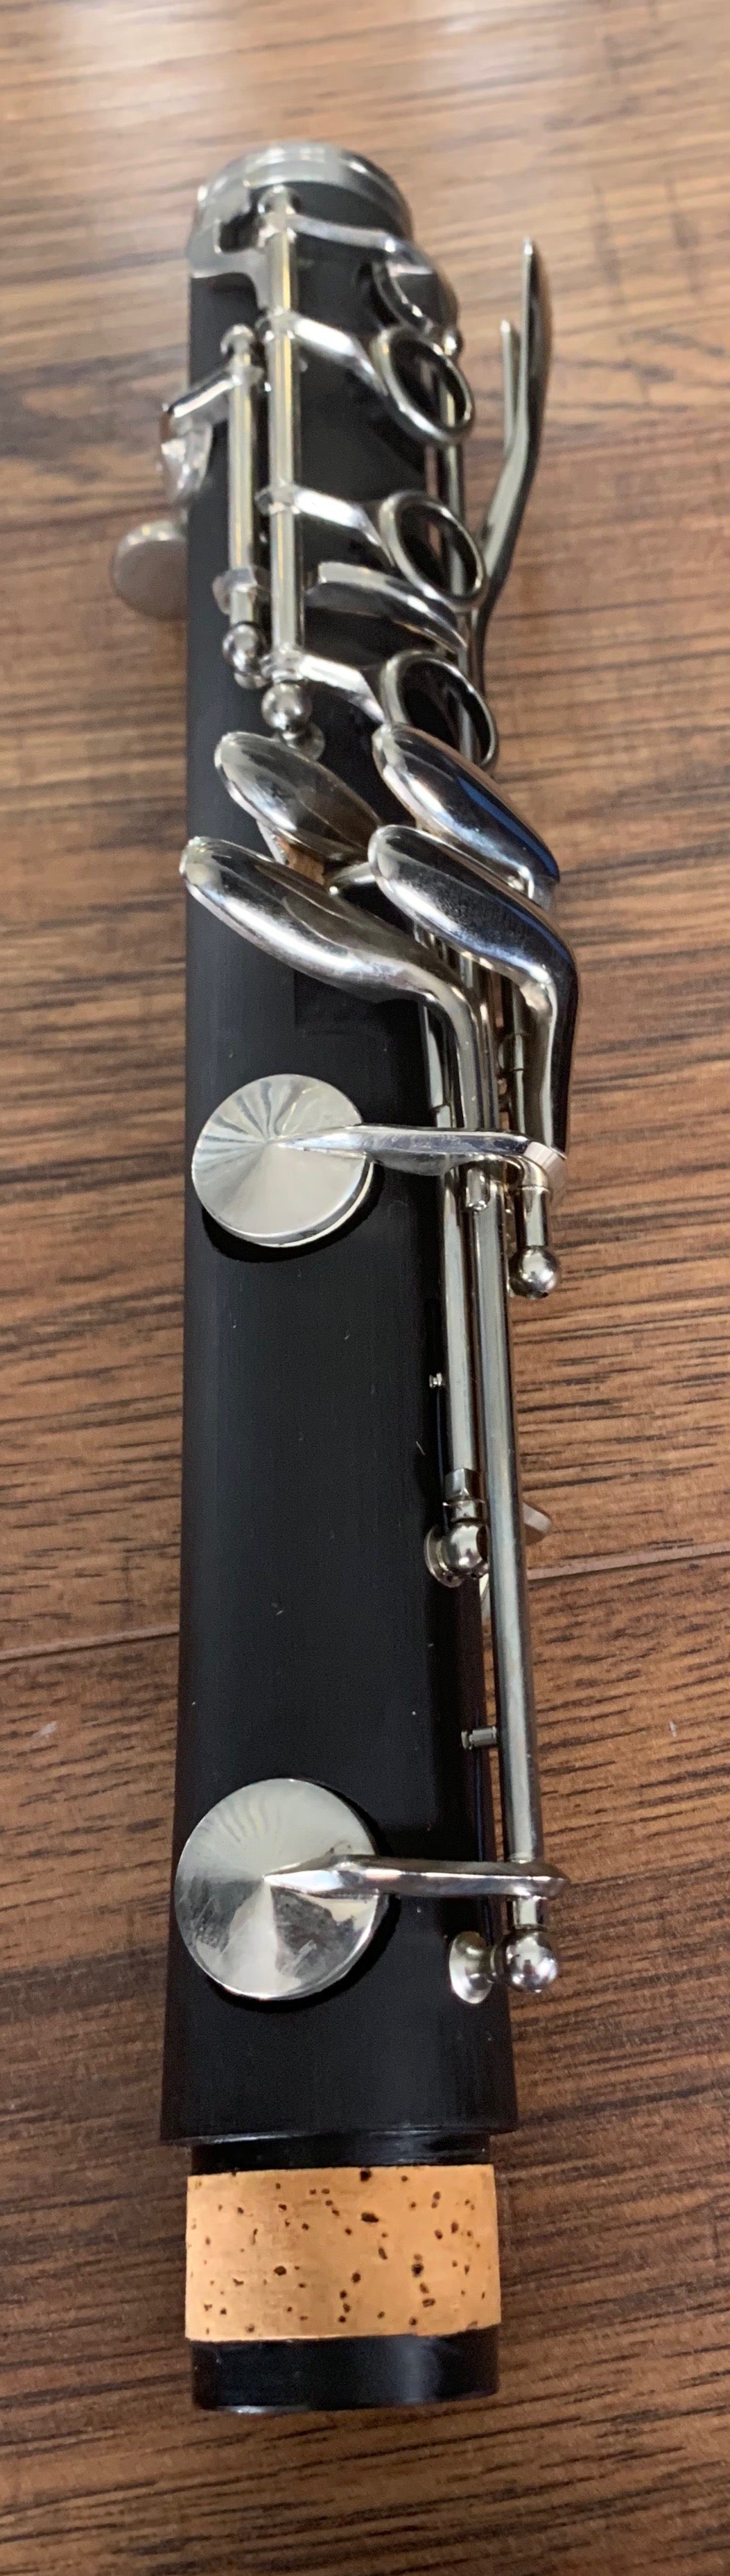 Eldon ECL475 Bb Student Clarinet & Case #26 Used Repair